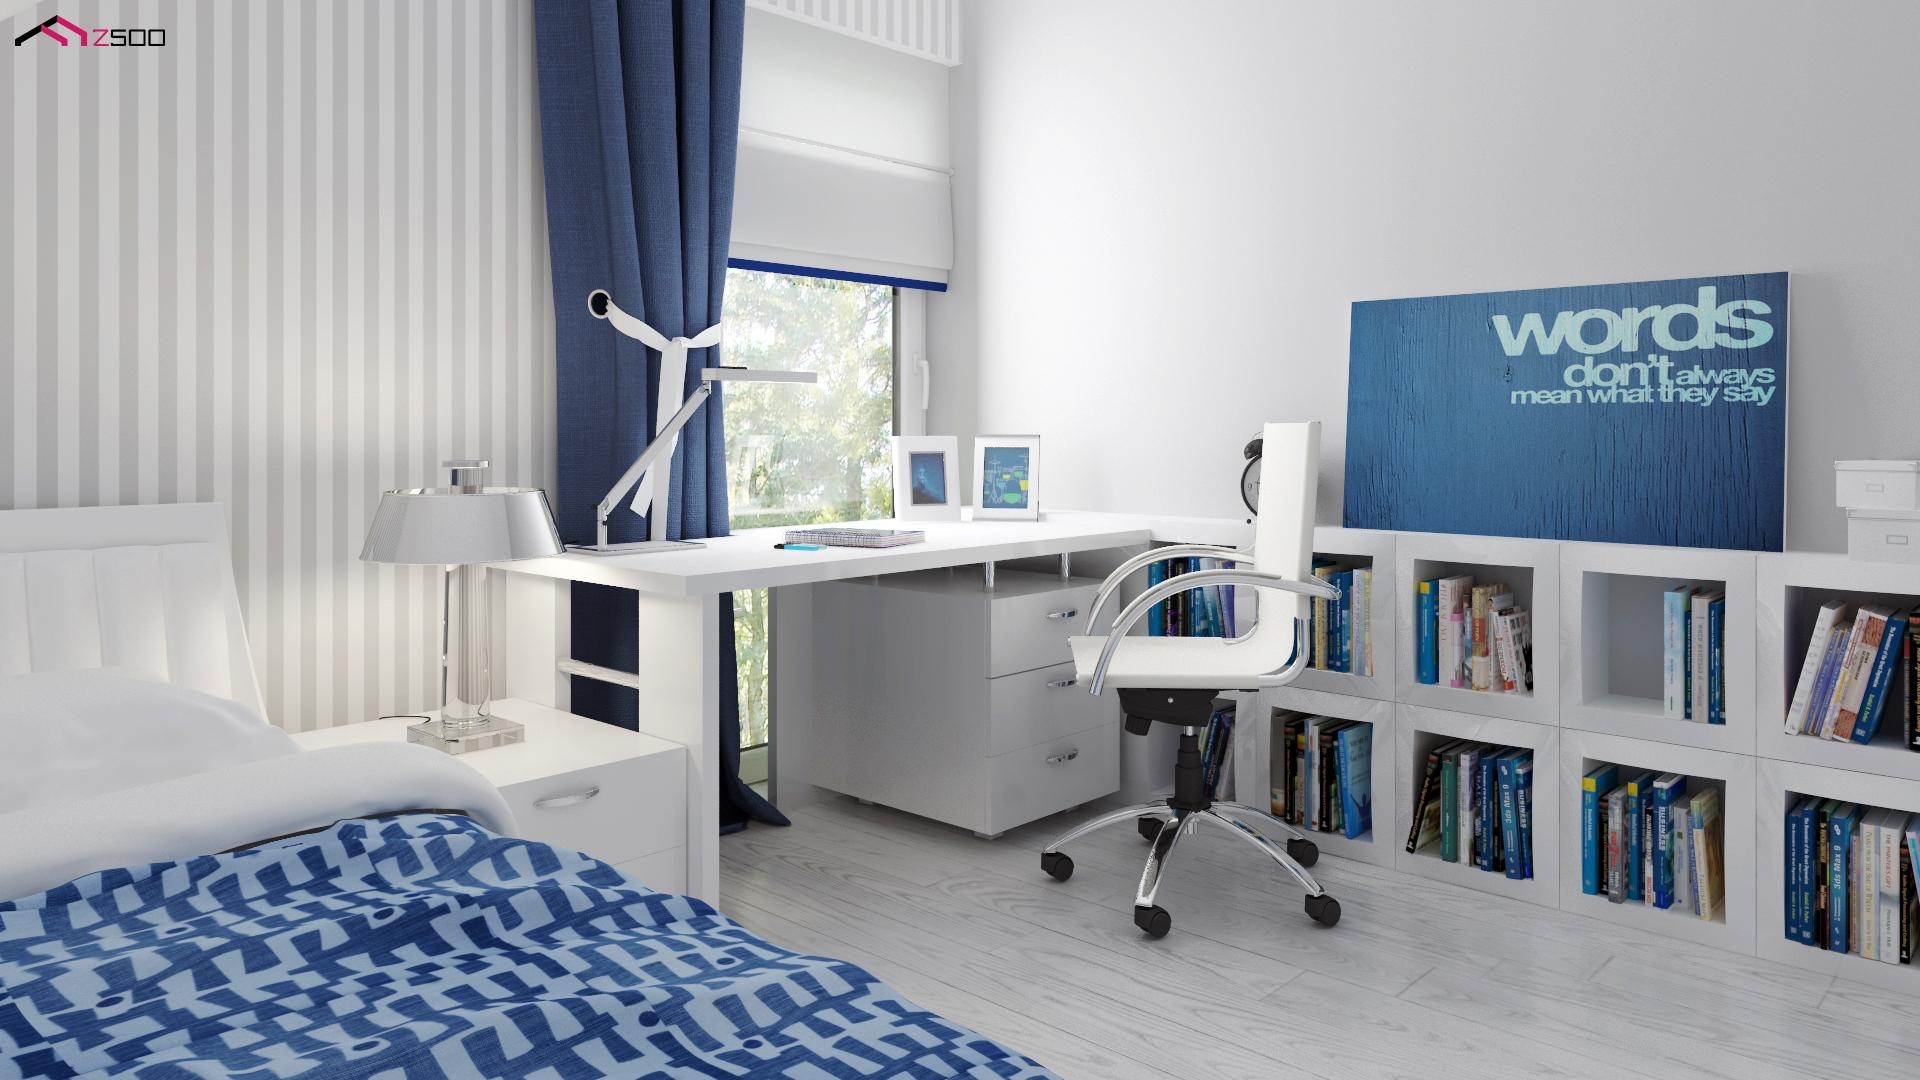 duży biały niebieski nowoczesny pokój jednoosobowe łóżko pokój dziecięcy biurko duże okno szafka noc